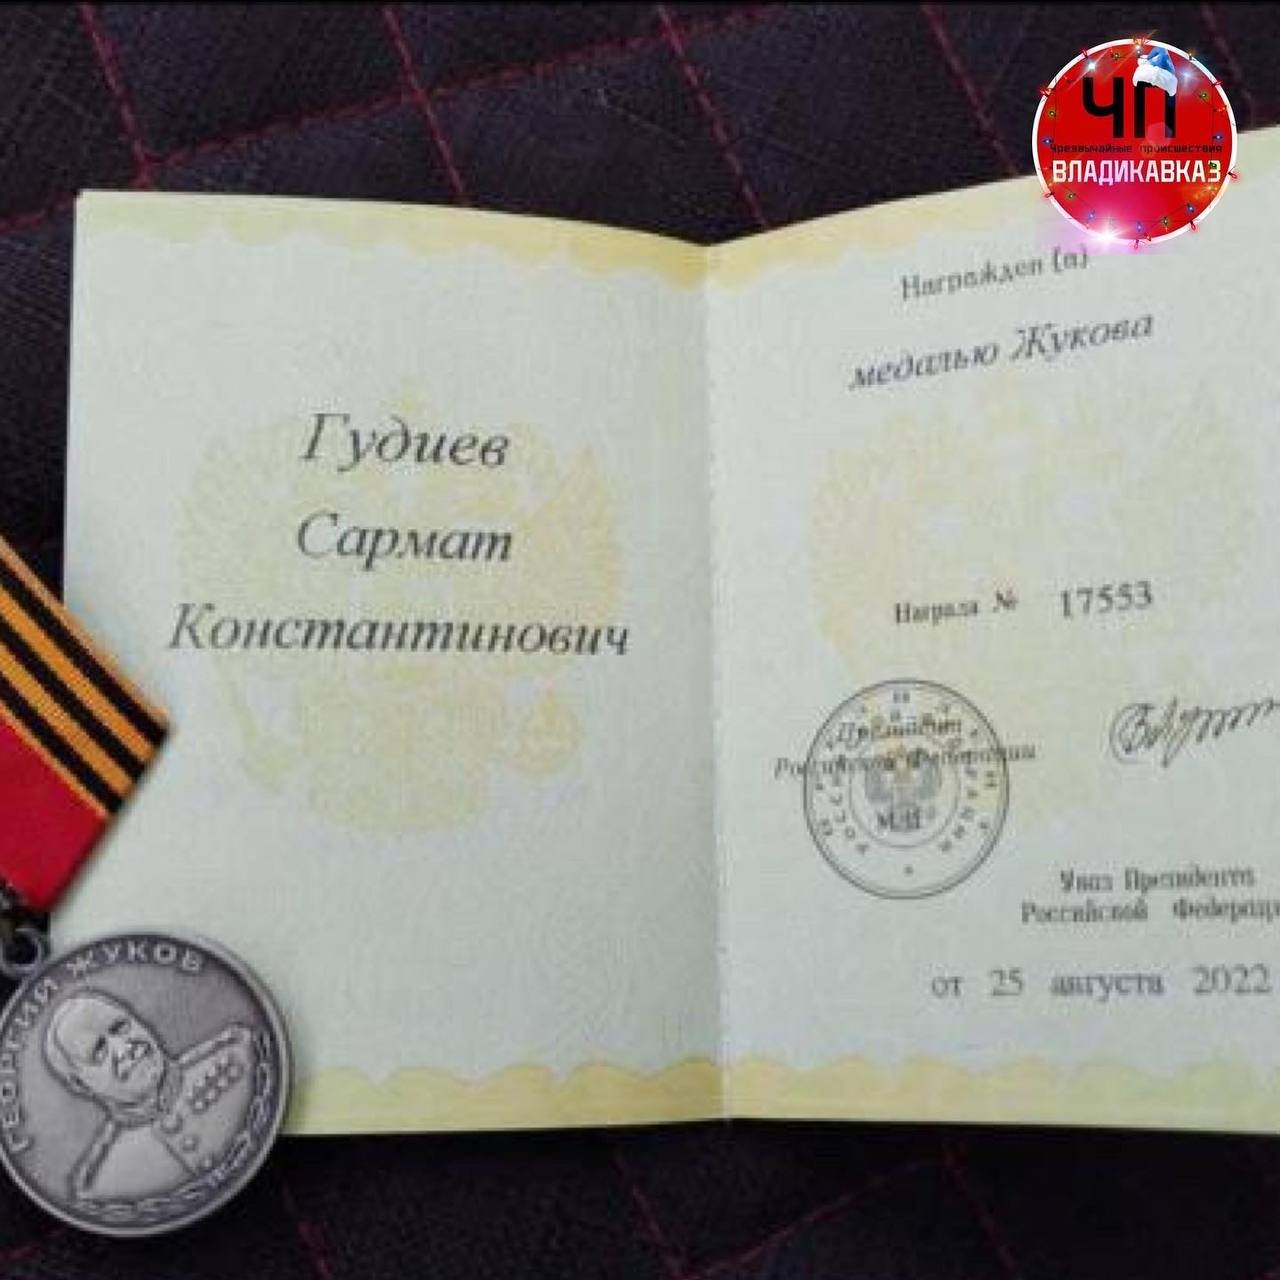 Росгвардеец из Владикавказа Гудиев Сармат Константинович удостоен высокой награды Медали Жукова